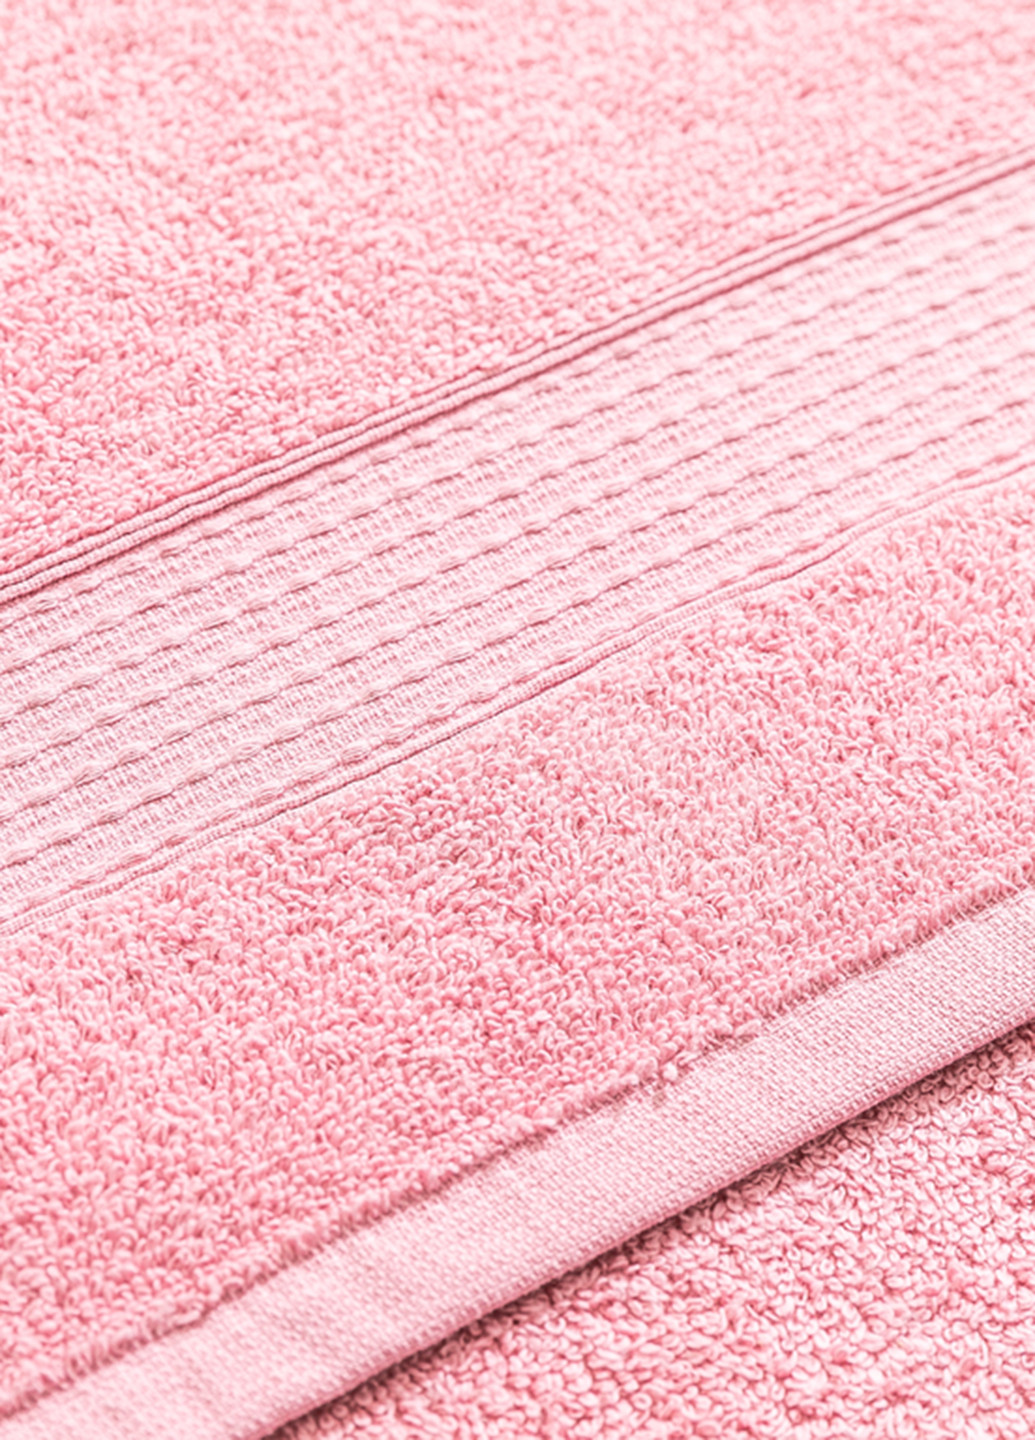 English Home полотенце, 50х90 см однотонный розовый производство - Турция